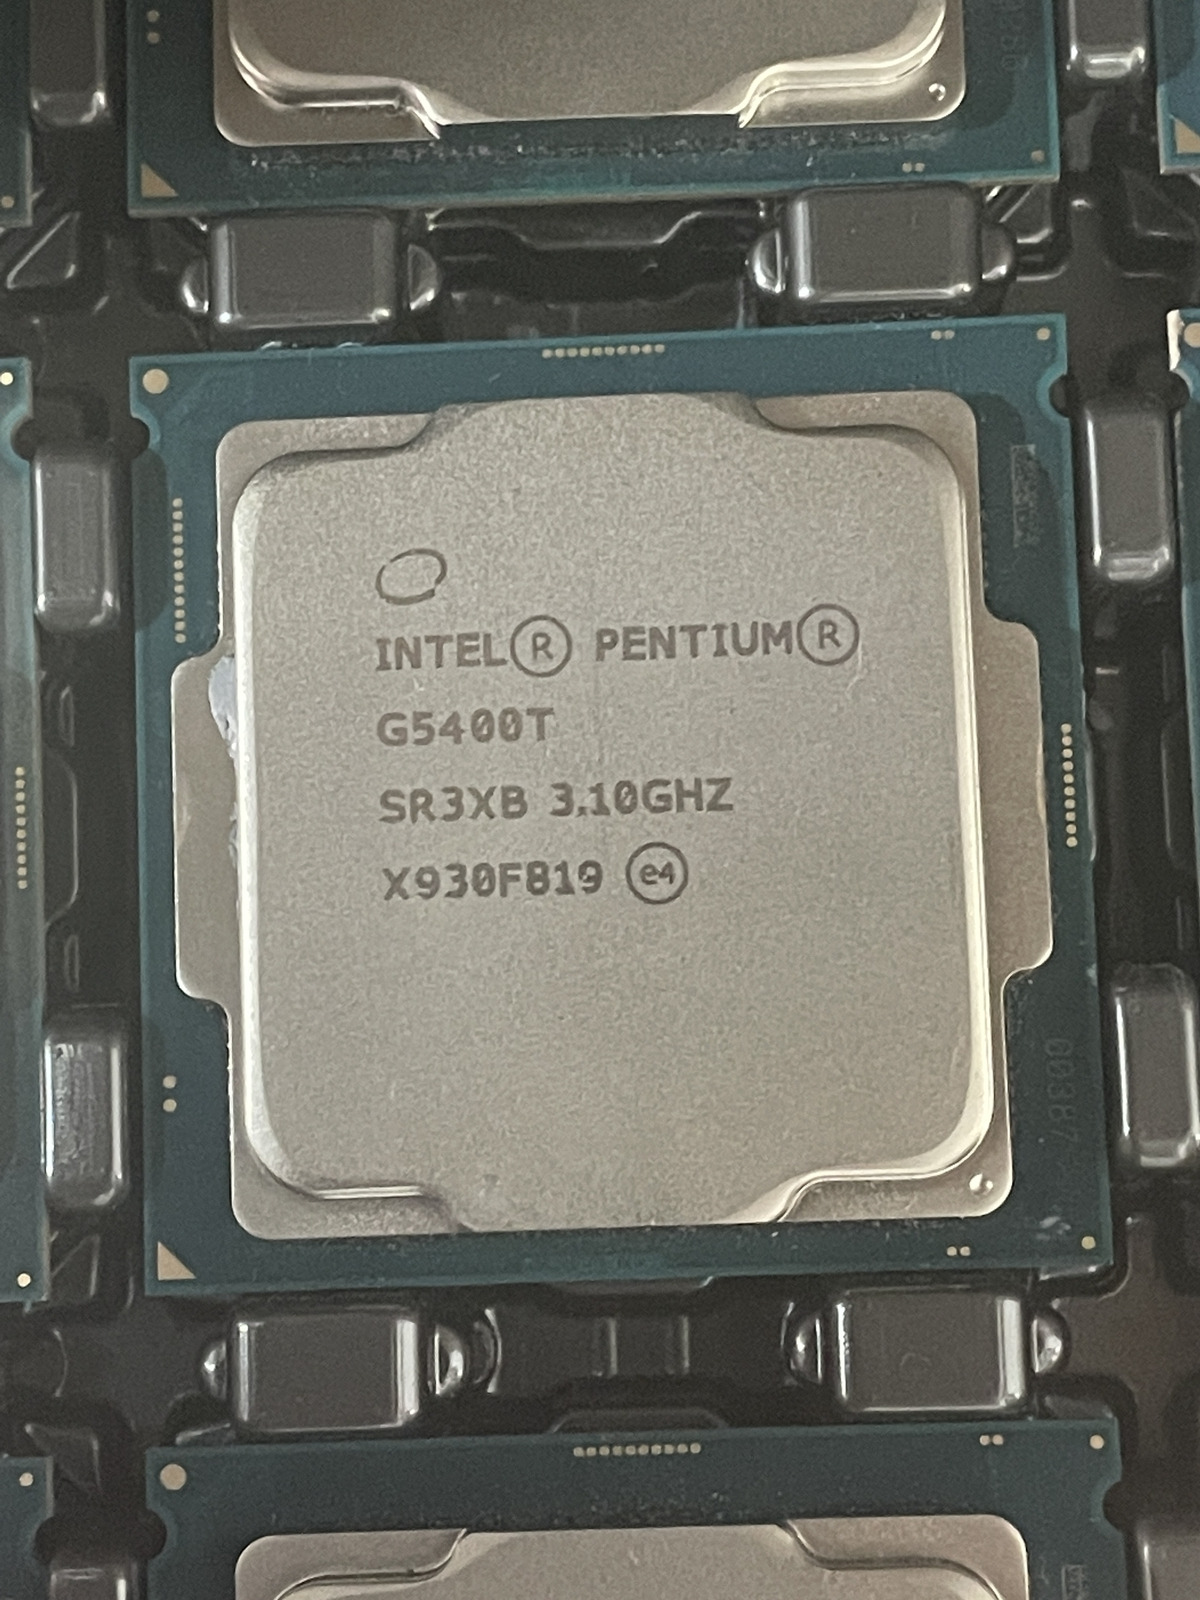 Lot of 25 Intel Pentium G5400T 3.10GHz 4MB SR3XB CPU Processor